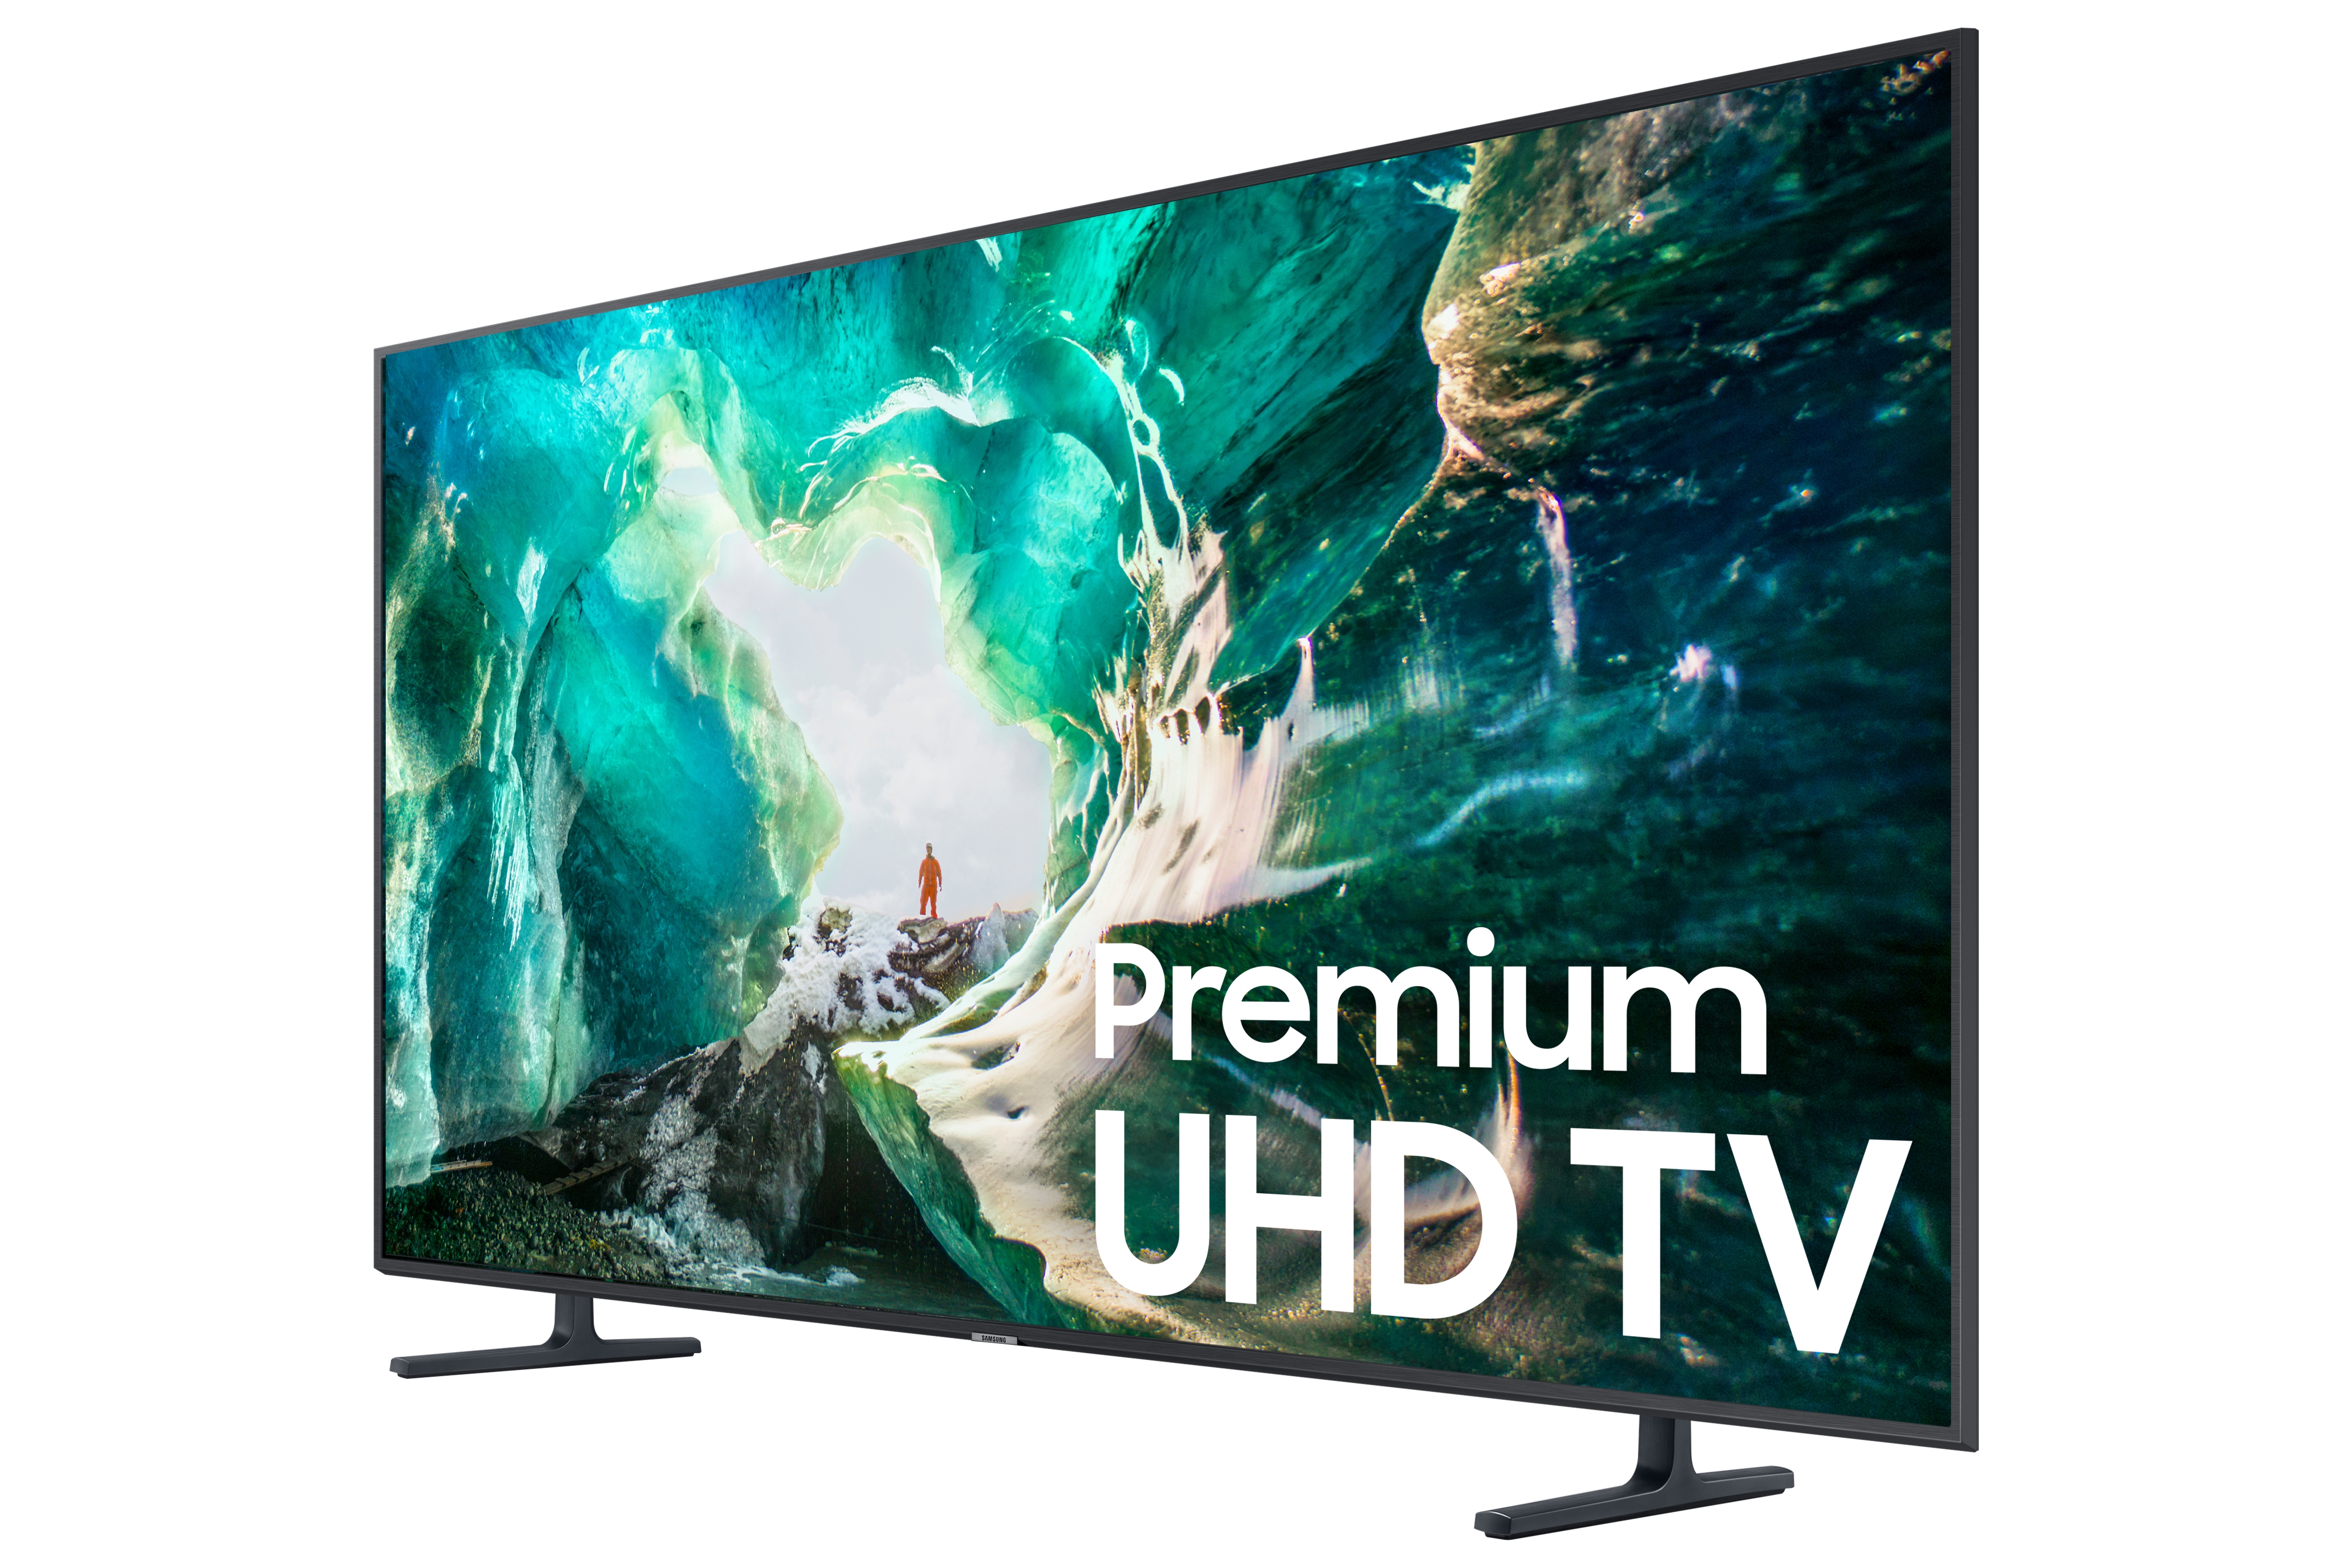 2019 Premium UHD TV RU8000 - Specs Price | Samsung US